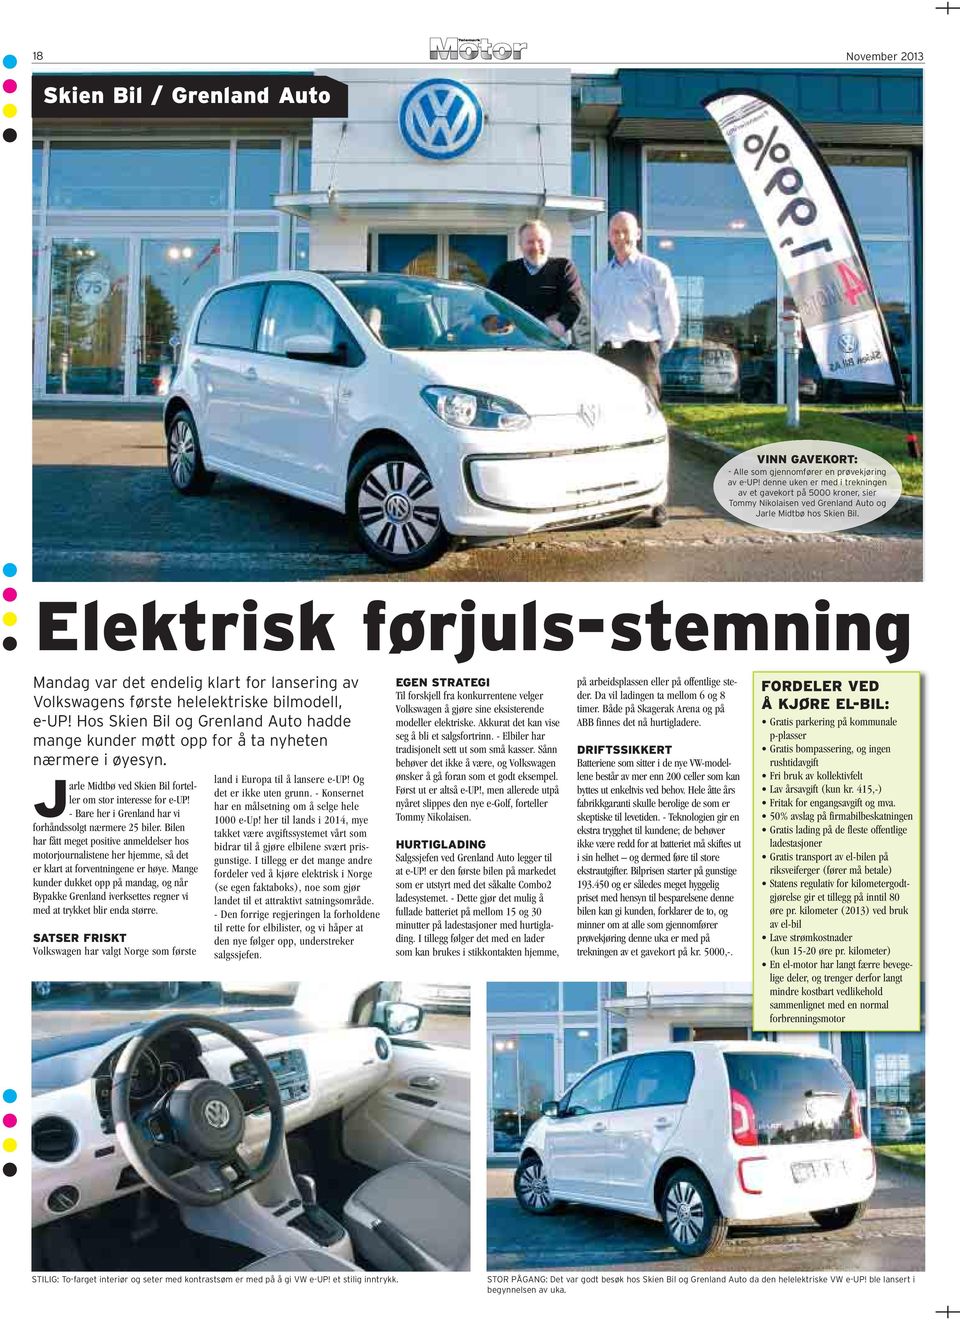 Elektrisk førjuls-stemning Mandag var det endelig klart for lansering av Volkswagens første helelektriske bilmodell, e-up!